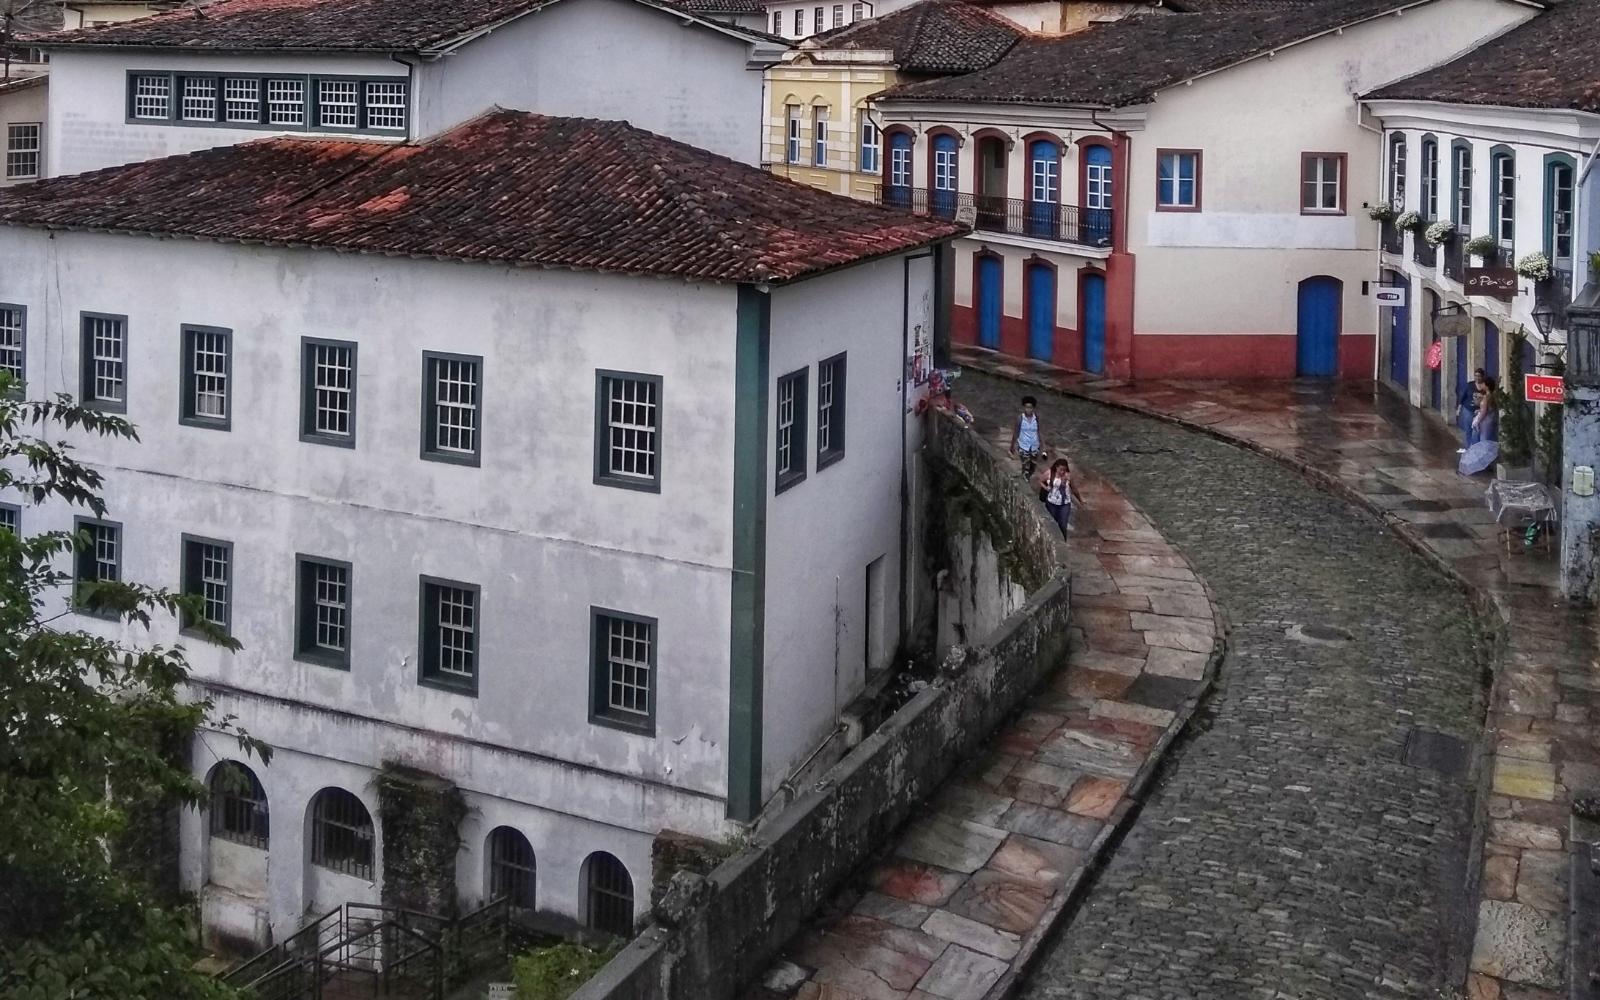 Trânsito no Centro Histórico de Ouro Preto passa por mudanças após quedas de casarões